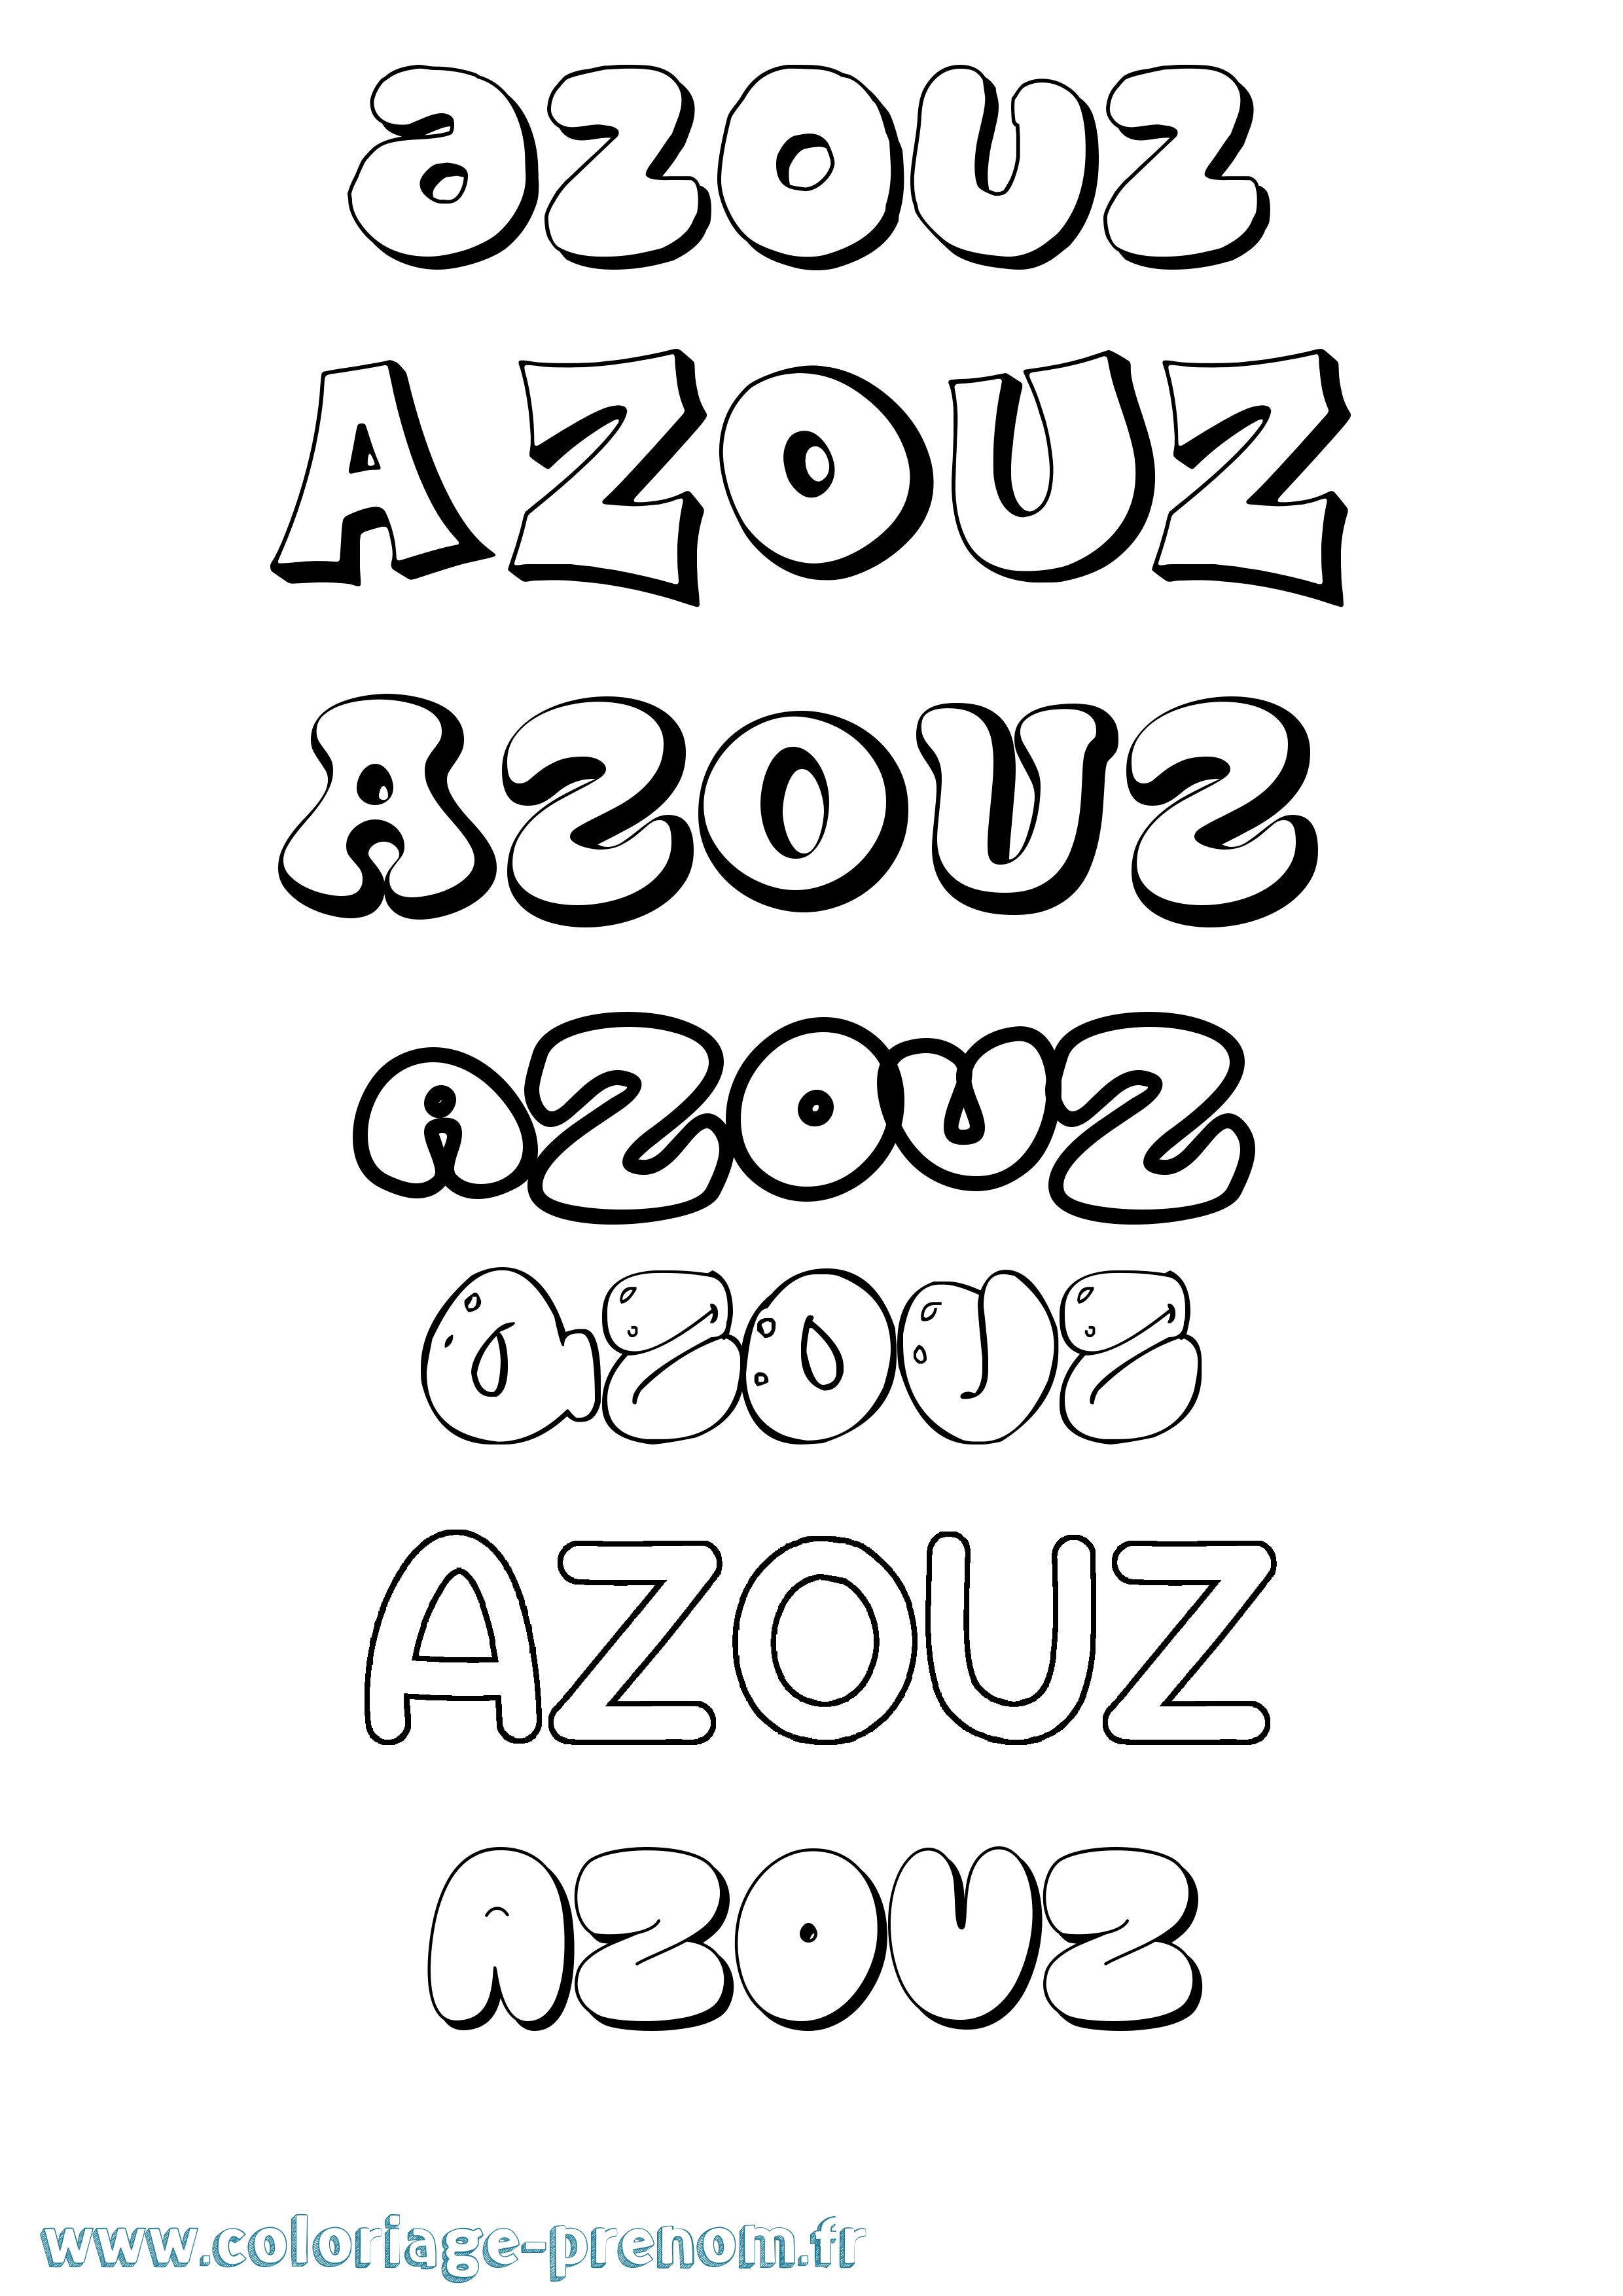 Coloriage prénom Azouz Bubble